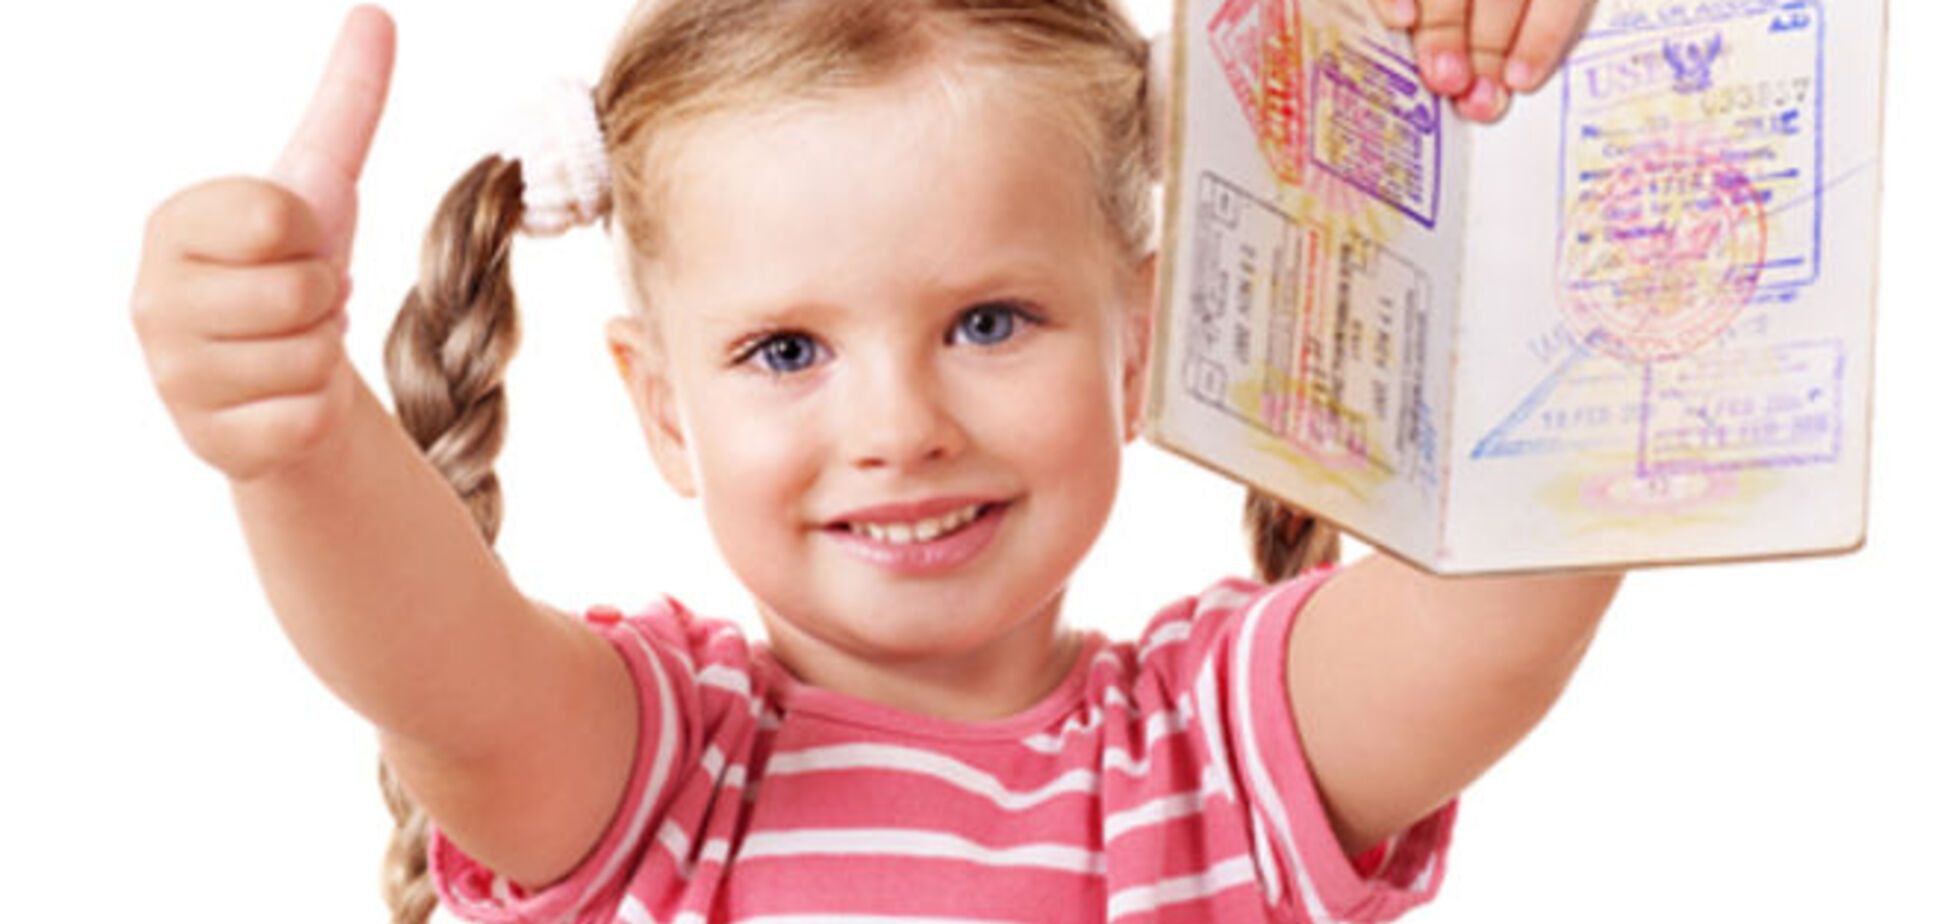 З сьогоднішнього дня дітей не вписуватимуть в закордонні паспорти